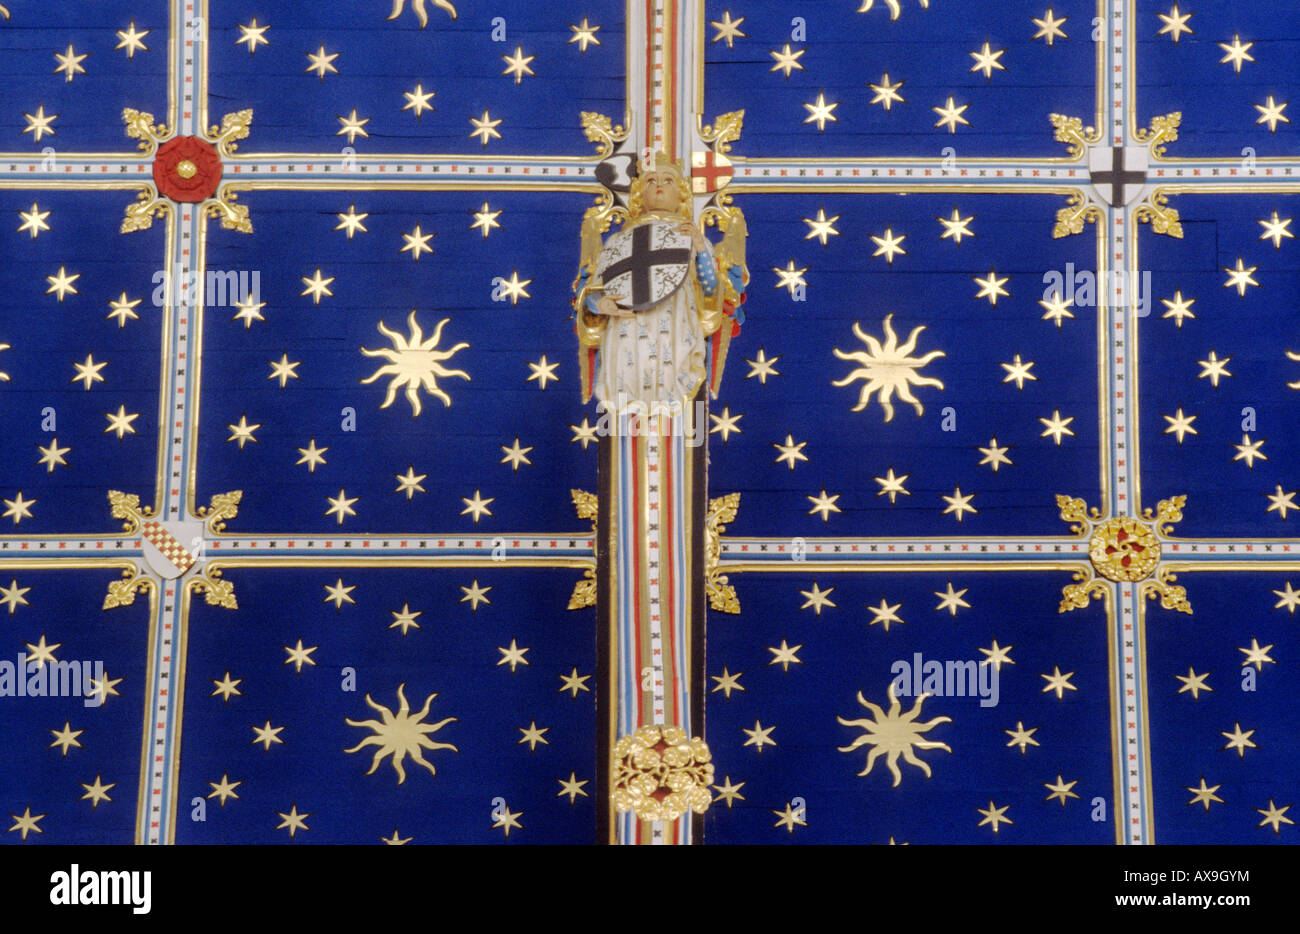 Carlisle Kathedrale Cumbria blau lackierten Gewölbedecke Sternen Engel heraldische Geräte Heraldik mittelalterliche englische Architektur Stockfoto